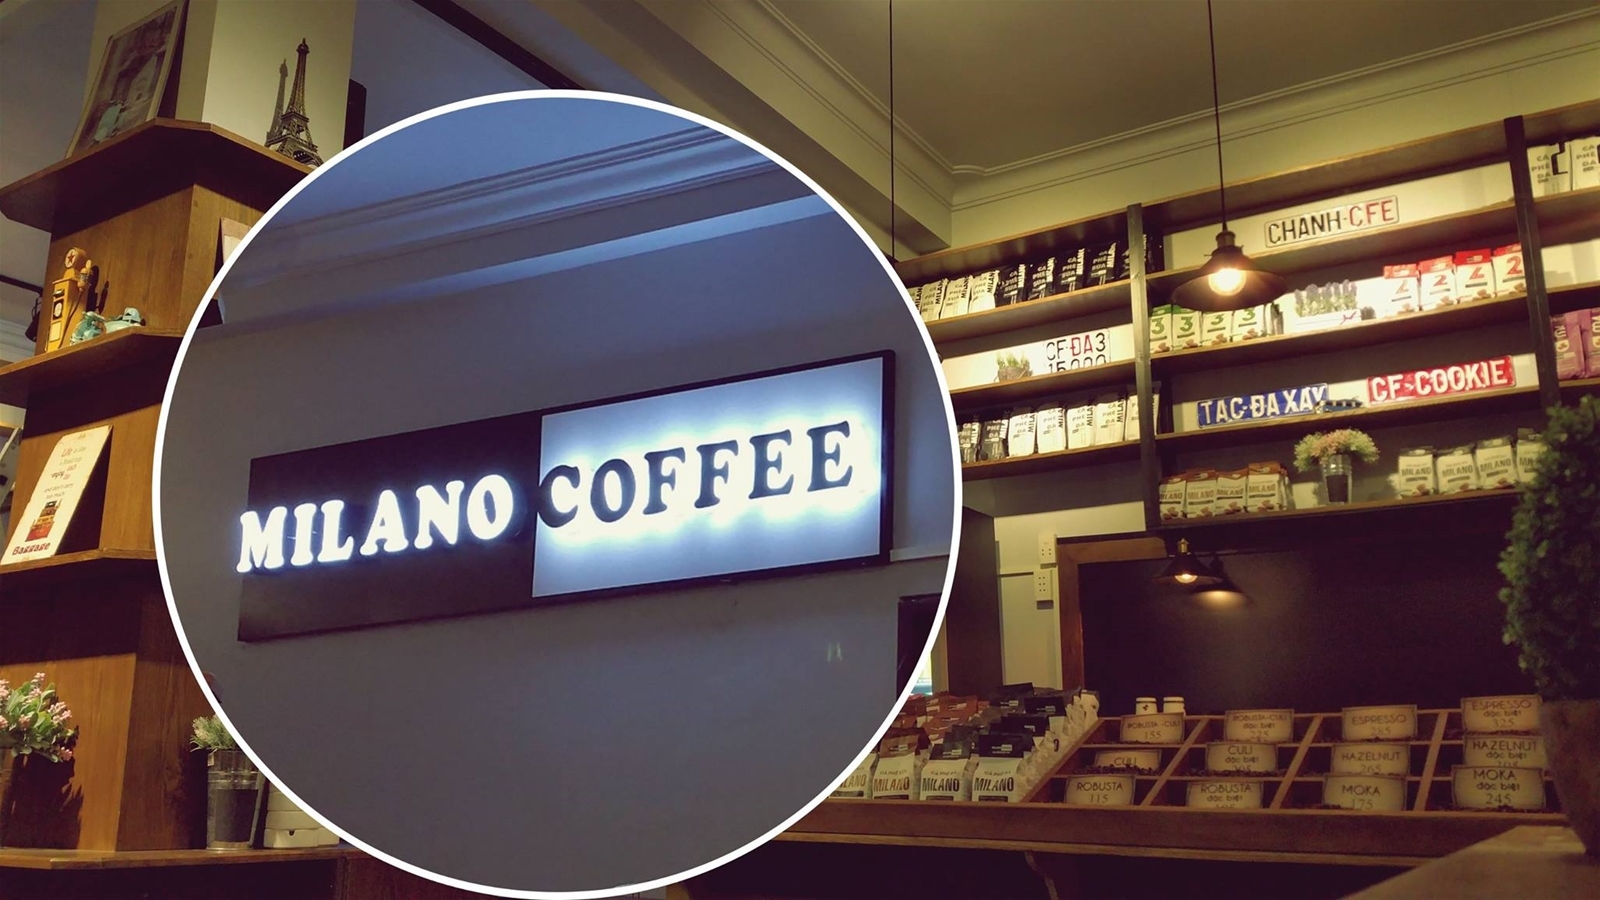 Chi phí mở quán cafe Milano là bao nhiêu? Cần lưu ý gì khi kinh doanh cafe Milano?